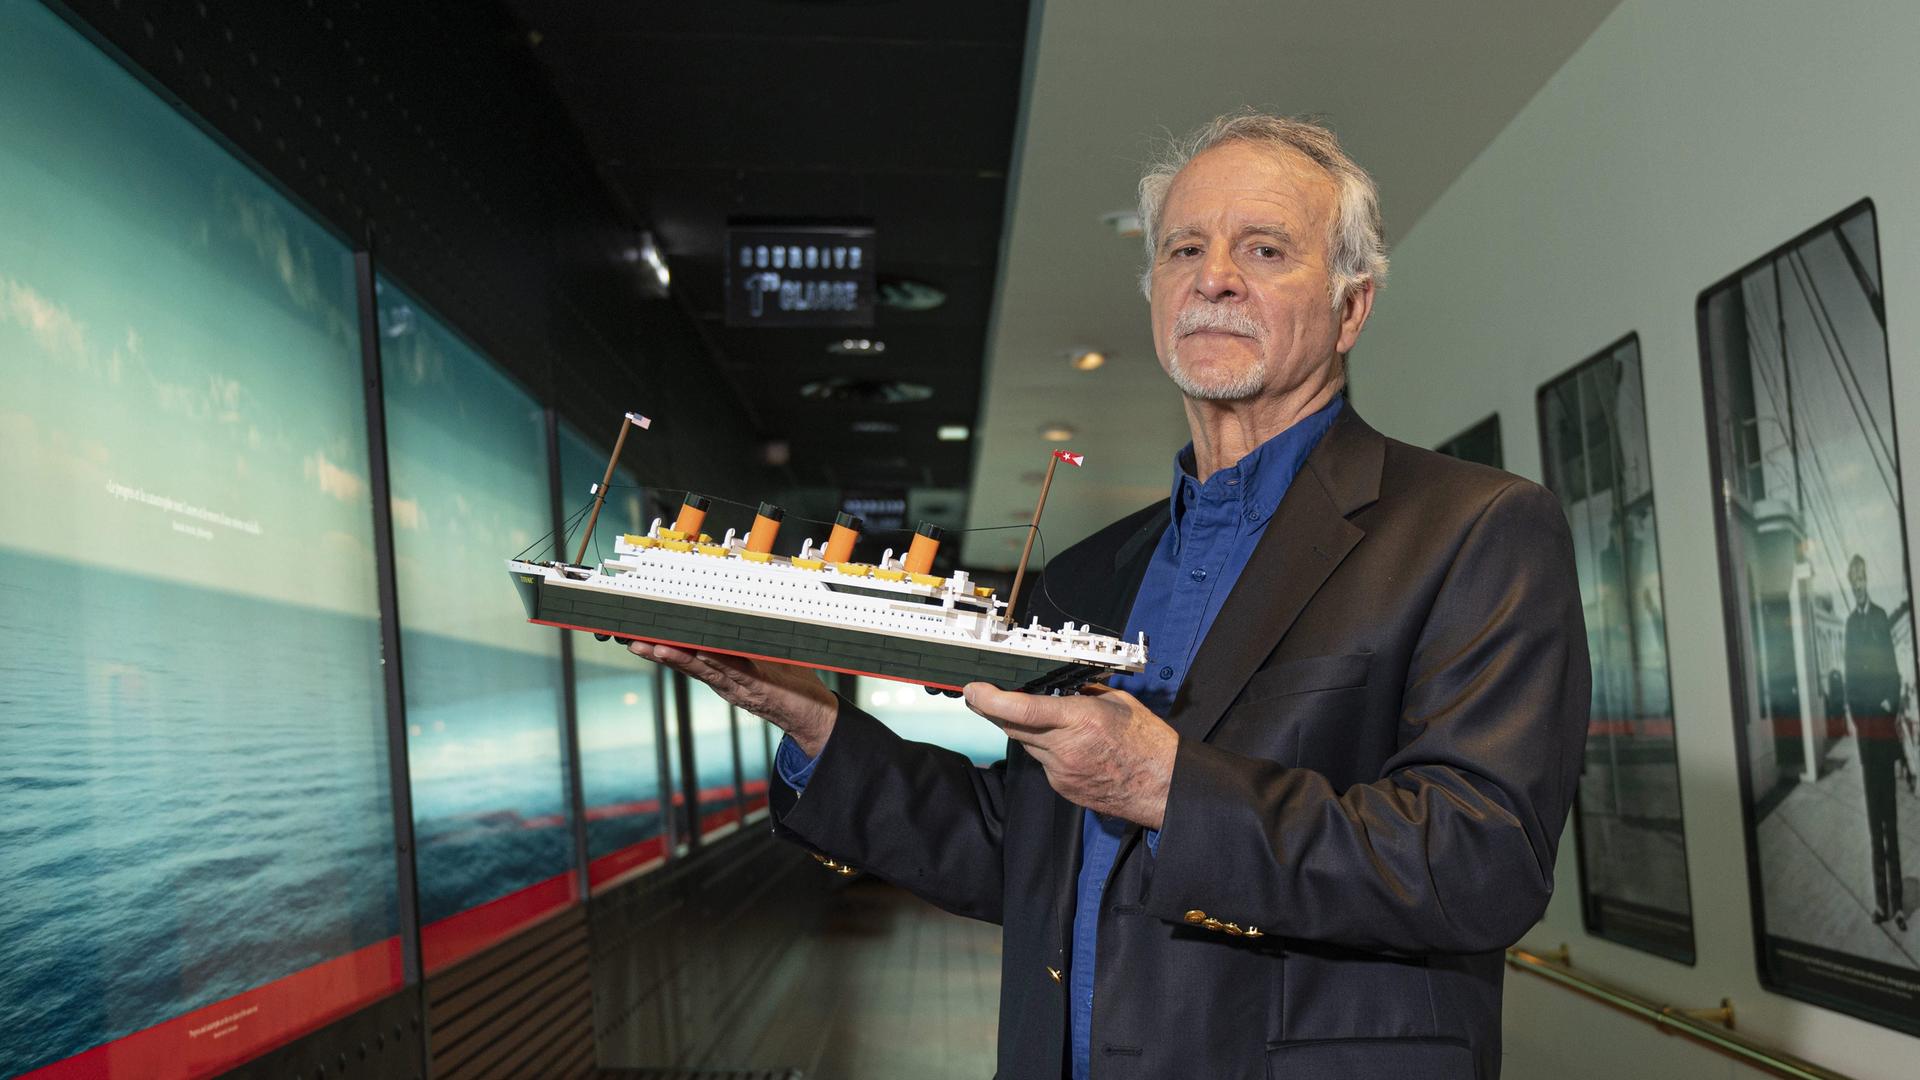 Der französische Tiefseeforscher und Titanic-Experte Paul-Henri Nargeolet mit einem Modell der Titanic in seiner Hand